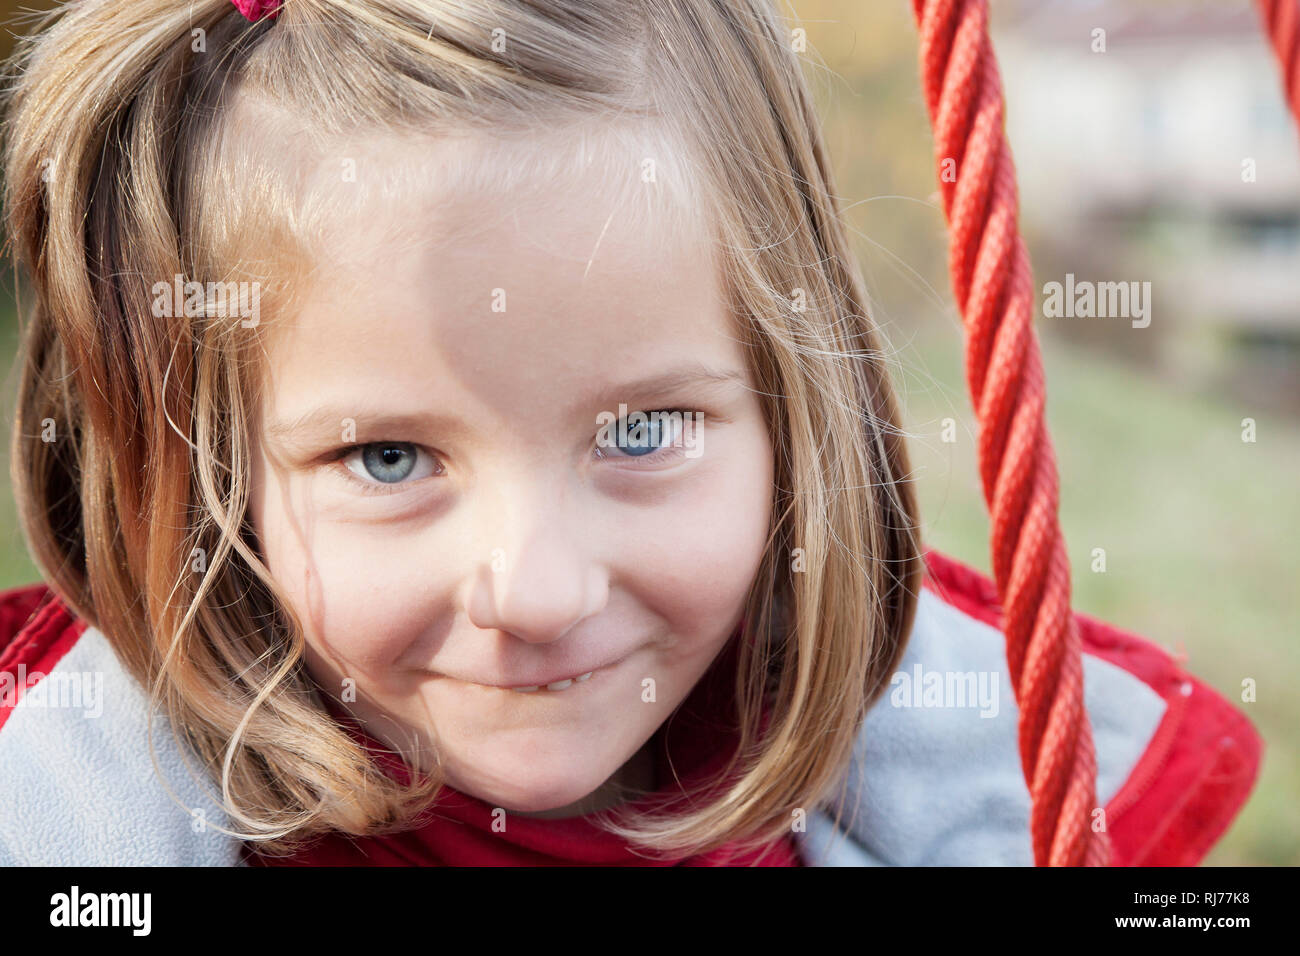 Portrait eines sechsjährigen Mädchens Stock Photo